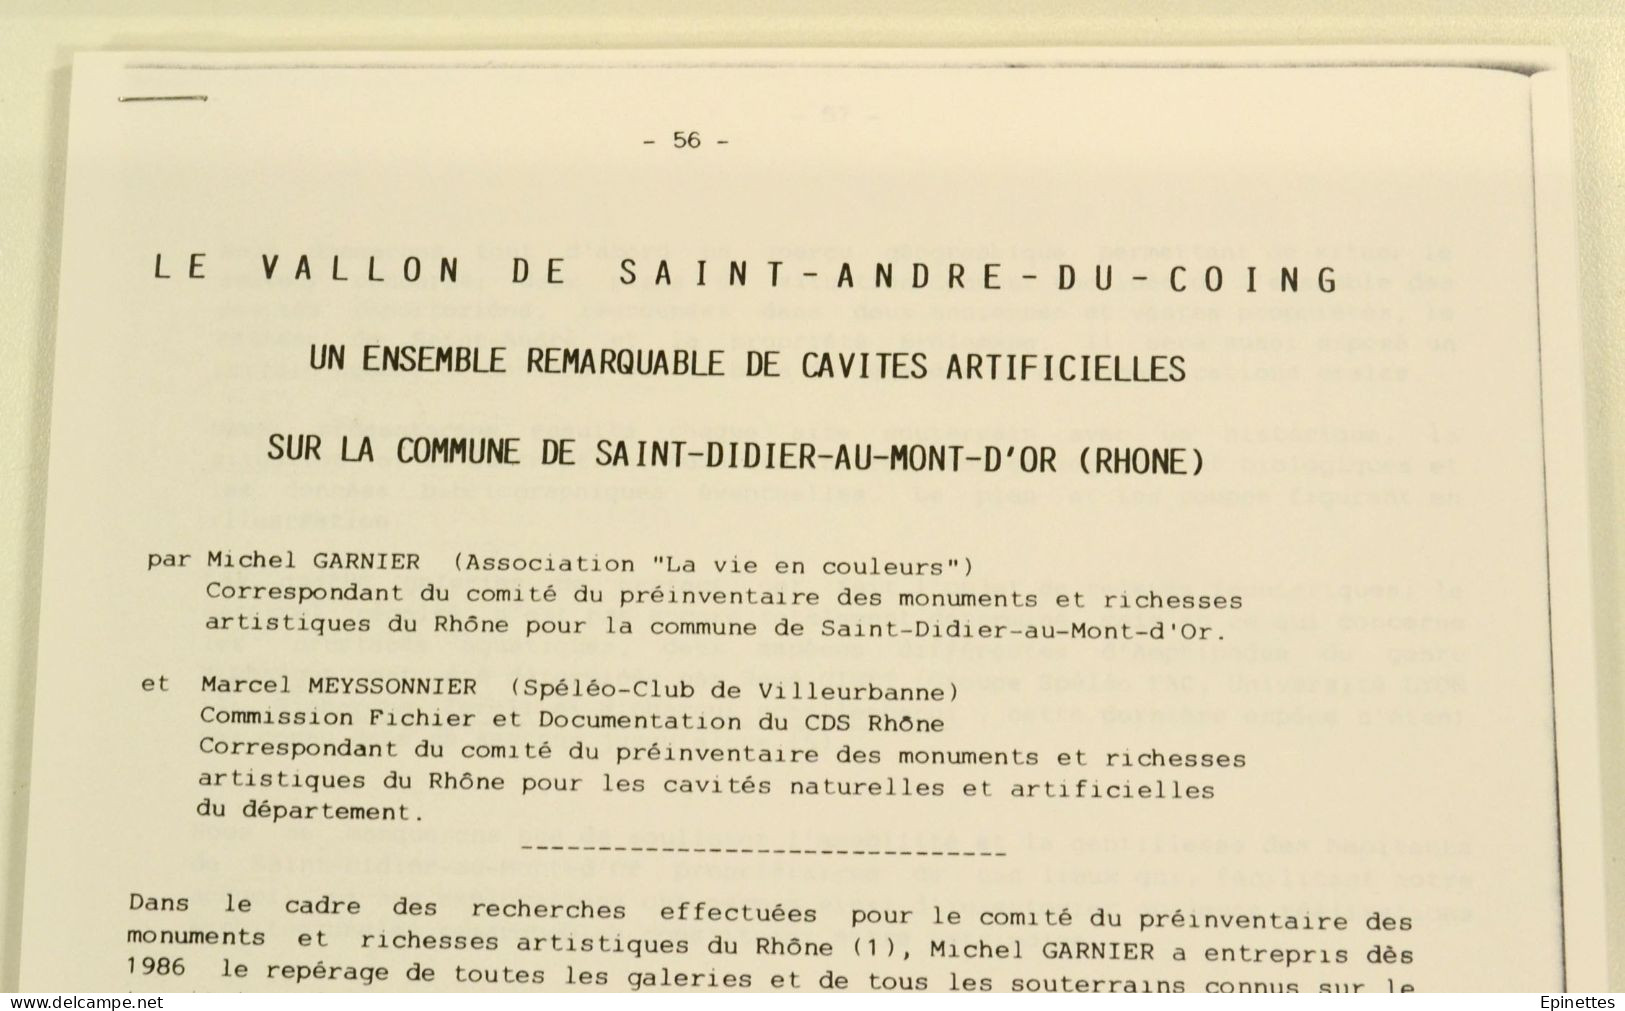 Inventaire prélim. Cavités naturelles et artificielles du Dépt. du Rhône, 1985, CDSR/FFS + DONNE 2 docs spéléologie 69